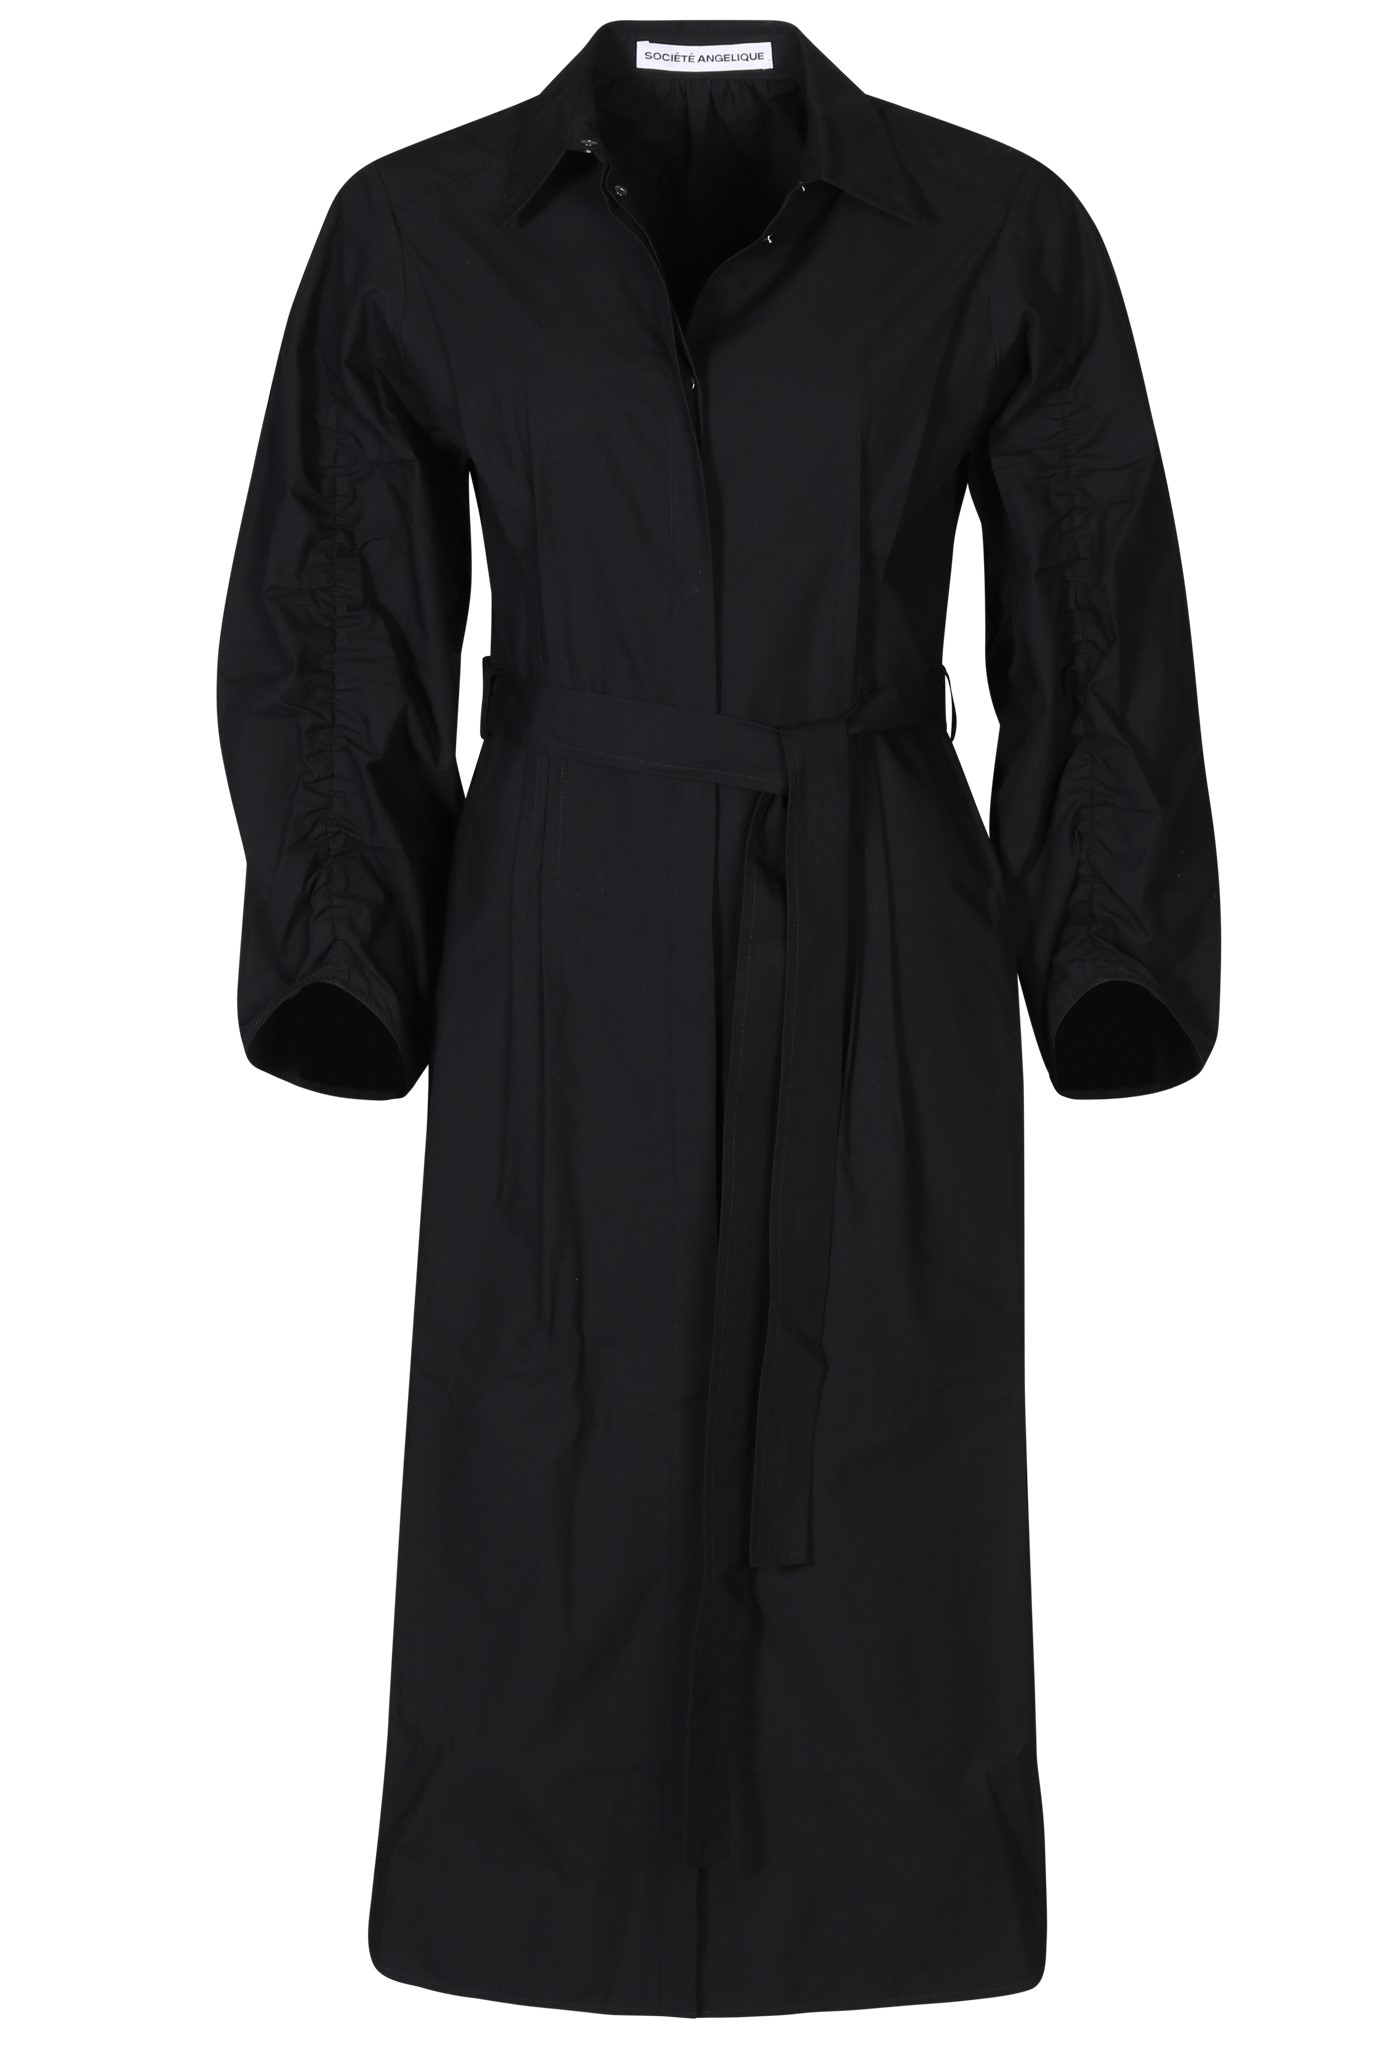 SOCIÉTÉ ANGELIQUE Ana Cotton Dress in Black